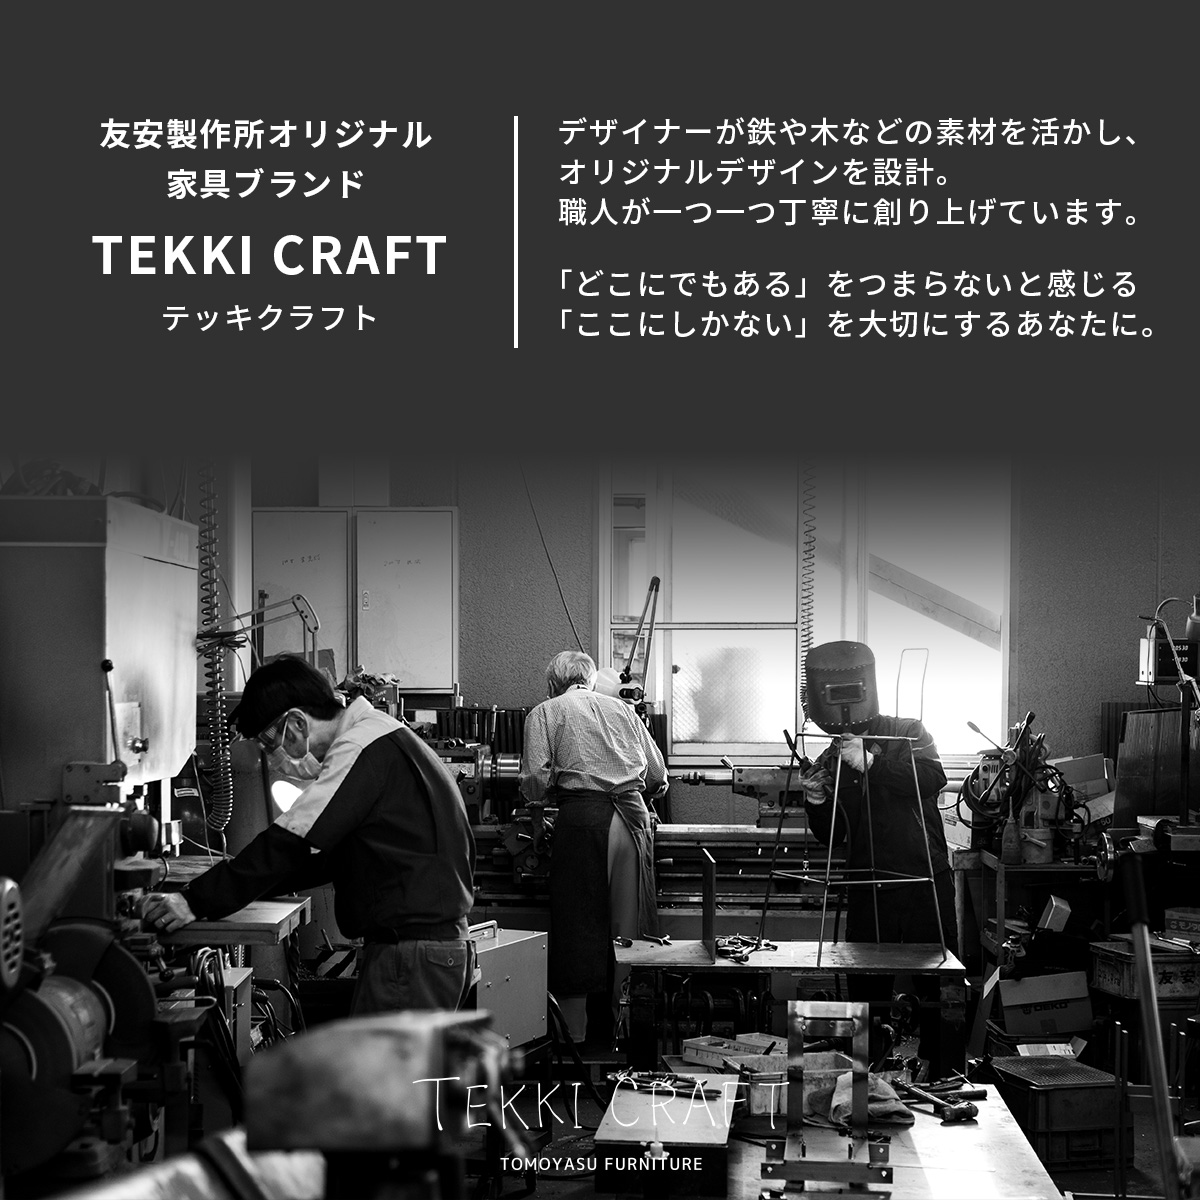 アイアンサイン・ネーム・ドアプレート WELCOME TEKKI CRAFT・テッキクラフト